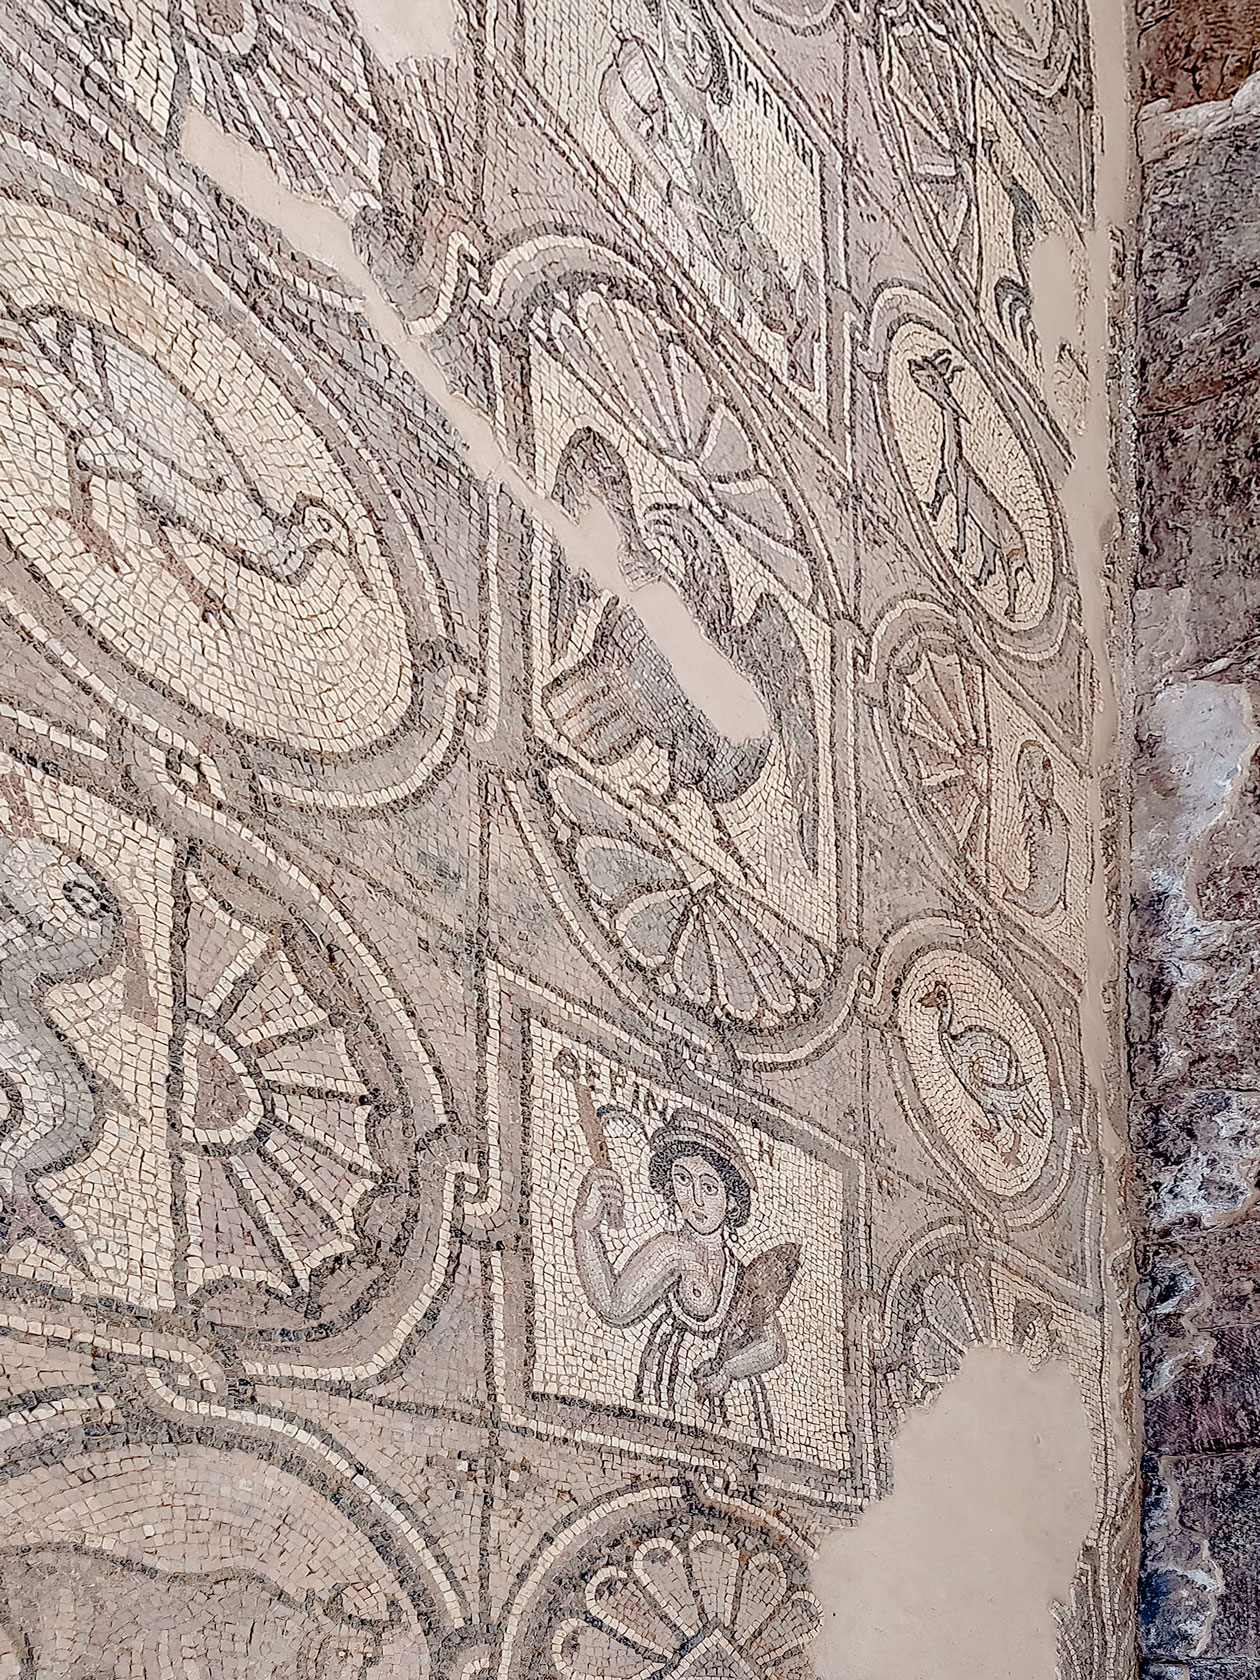 Мозаика на полу в византийской церкви